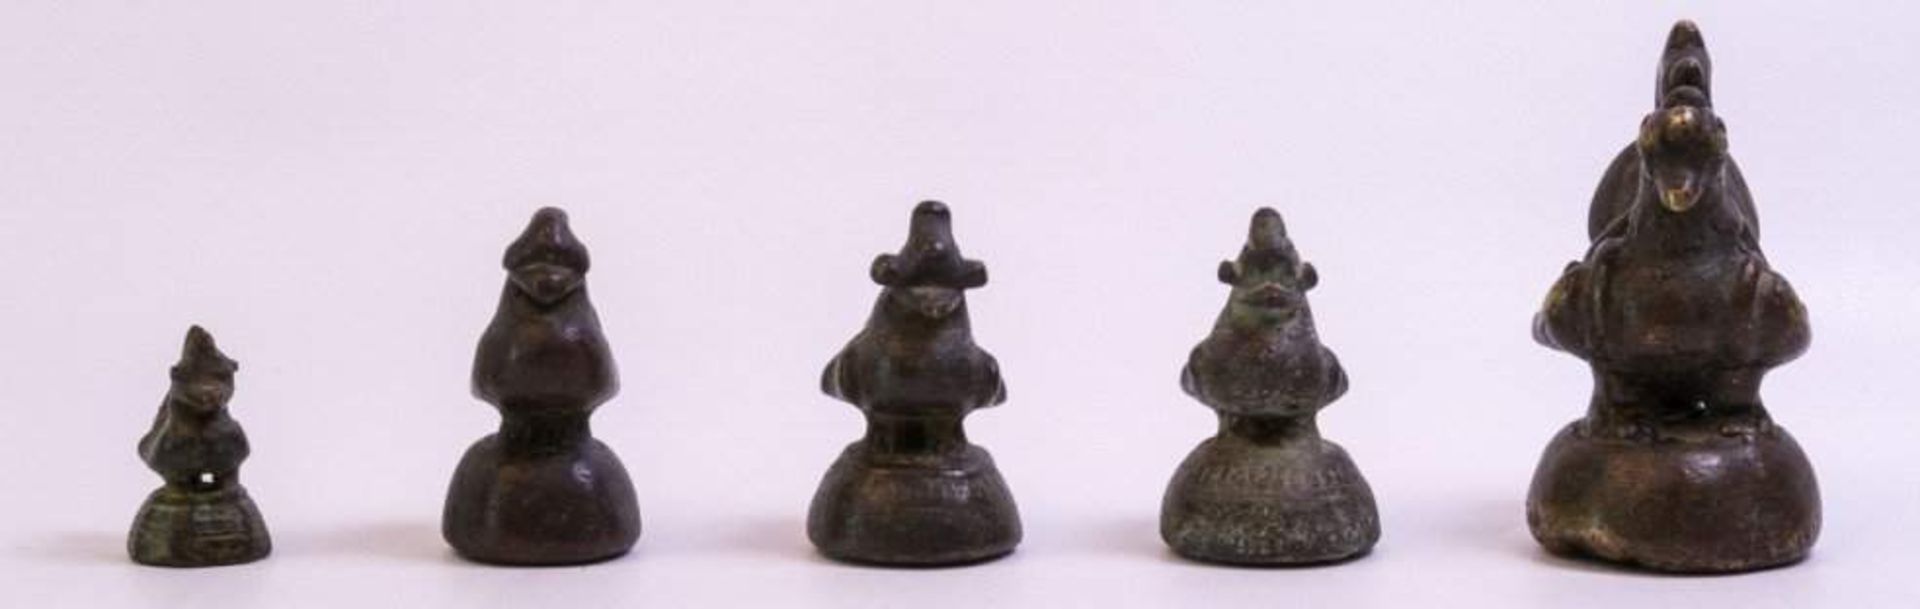 5 Opiumgewichte, Burma 17./18. Jh.Bronze, in Hühnerform, ca. H-3,5 bis 9 cm